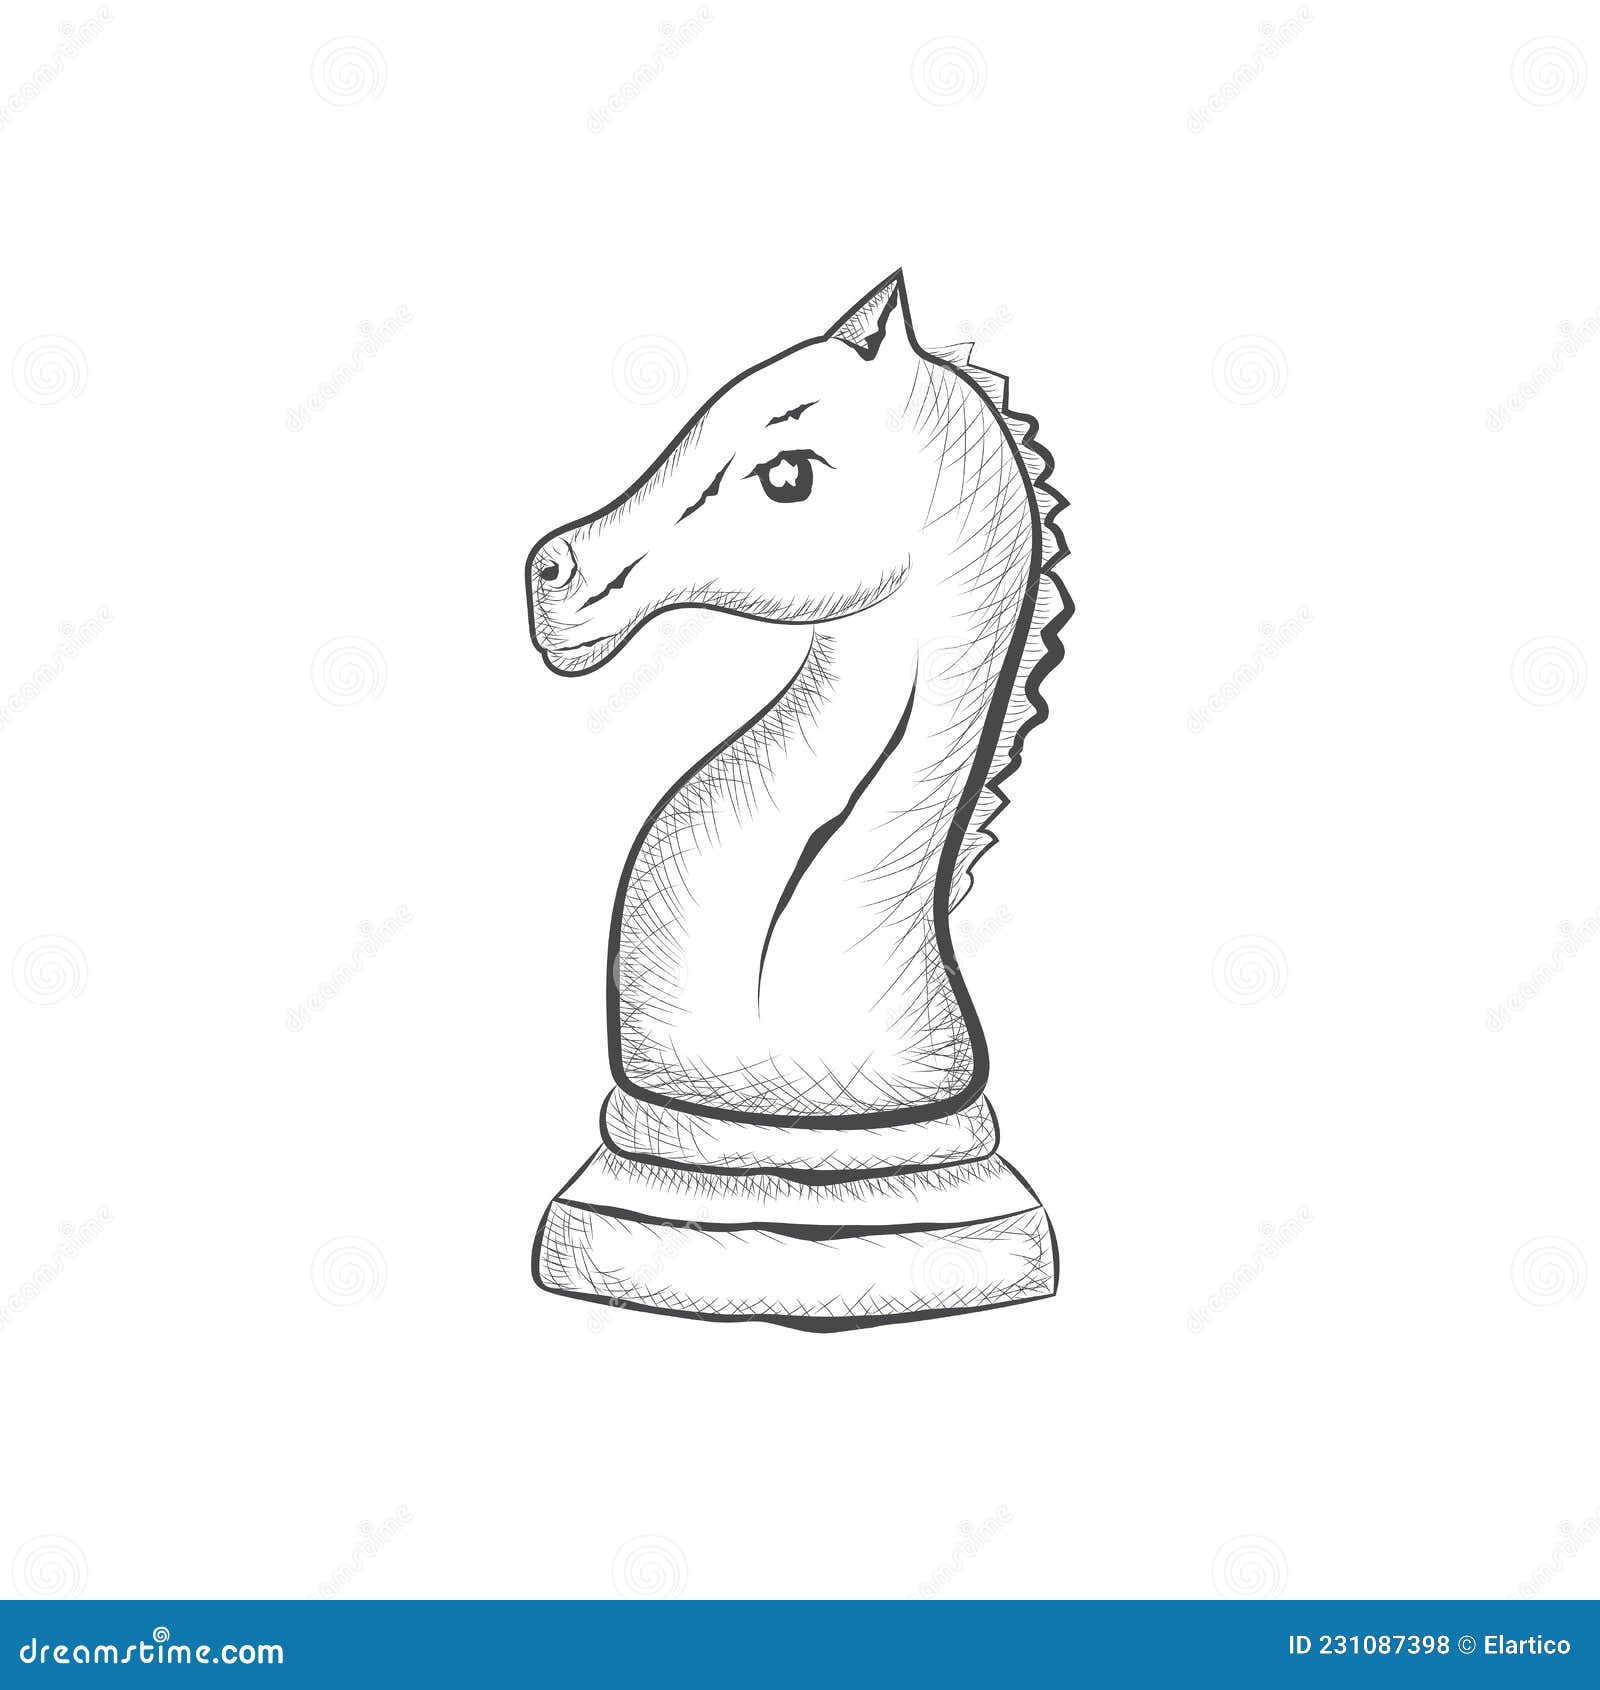 peças de xadrez em estilo de desenho. fundo da web do clube de